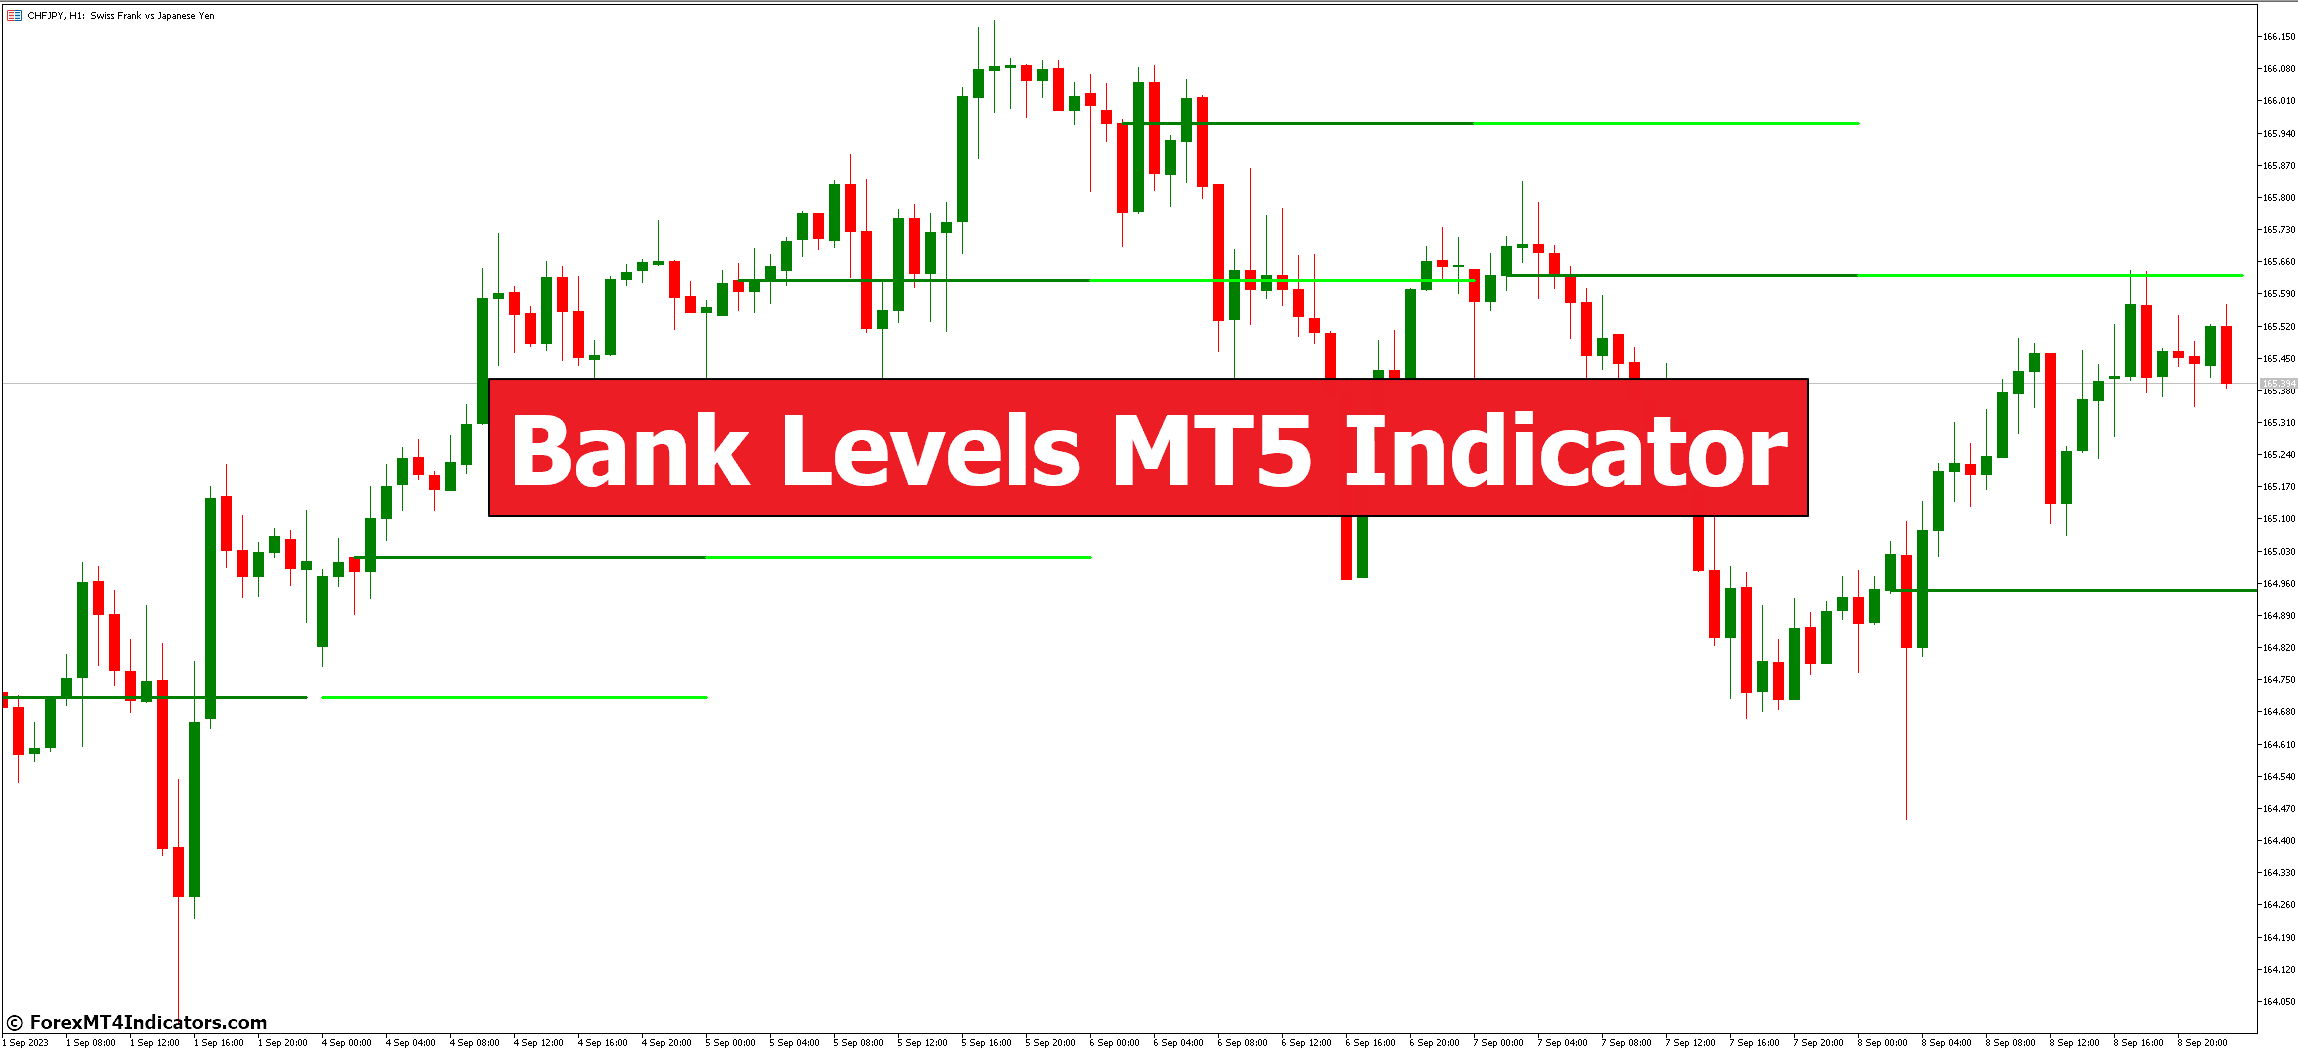 Bank Levels MT5 Indicator